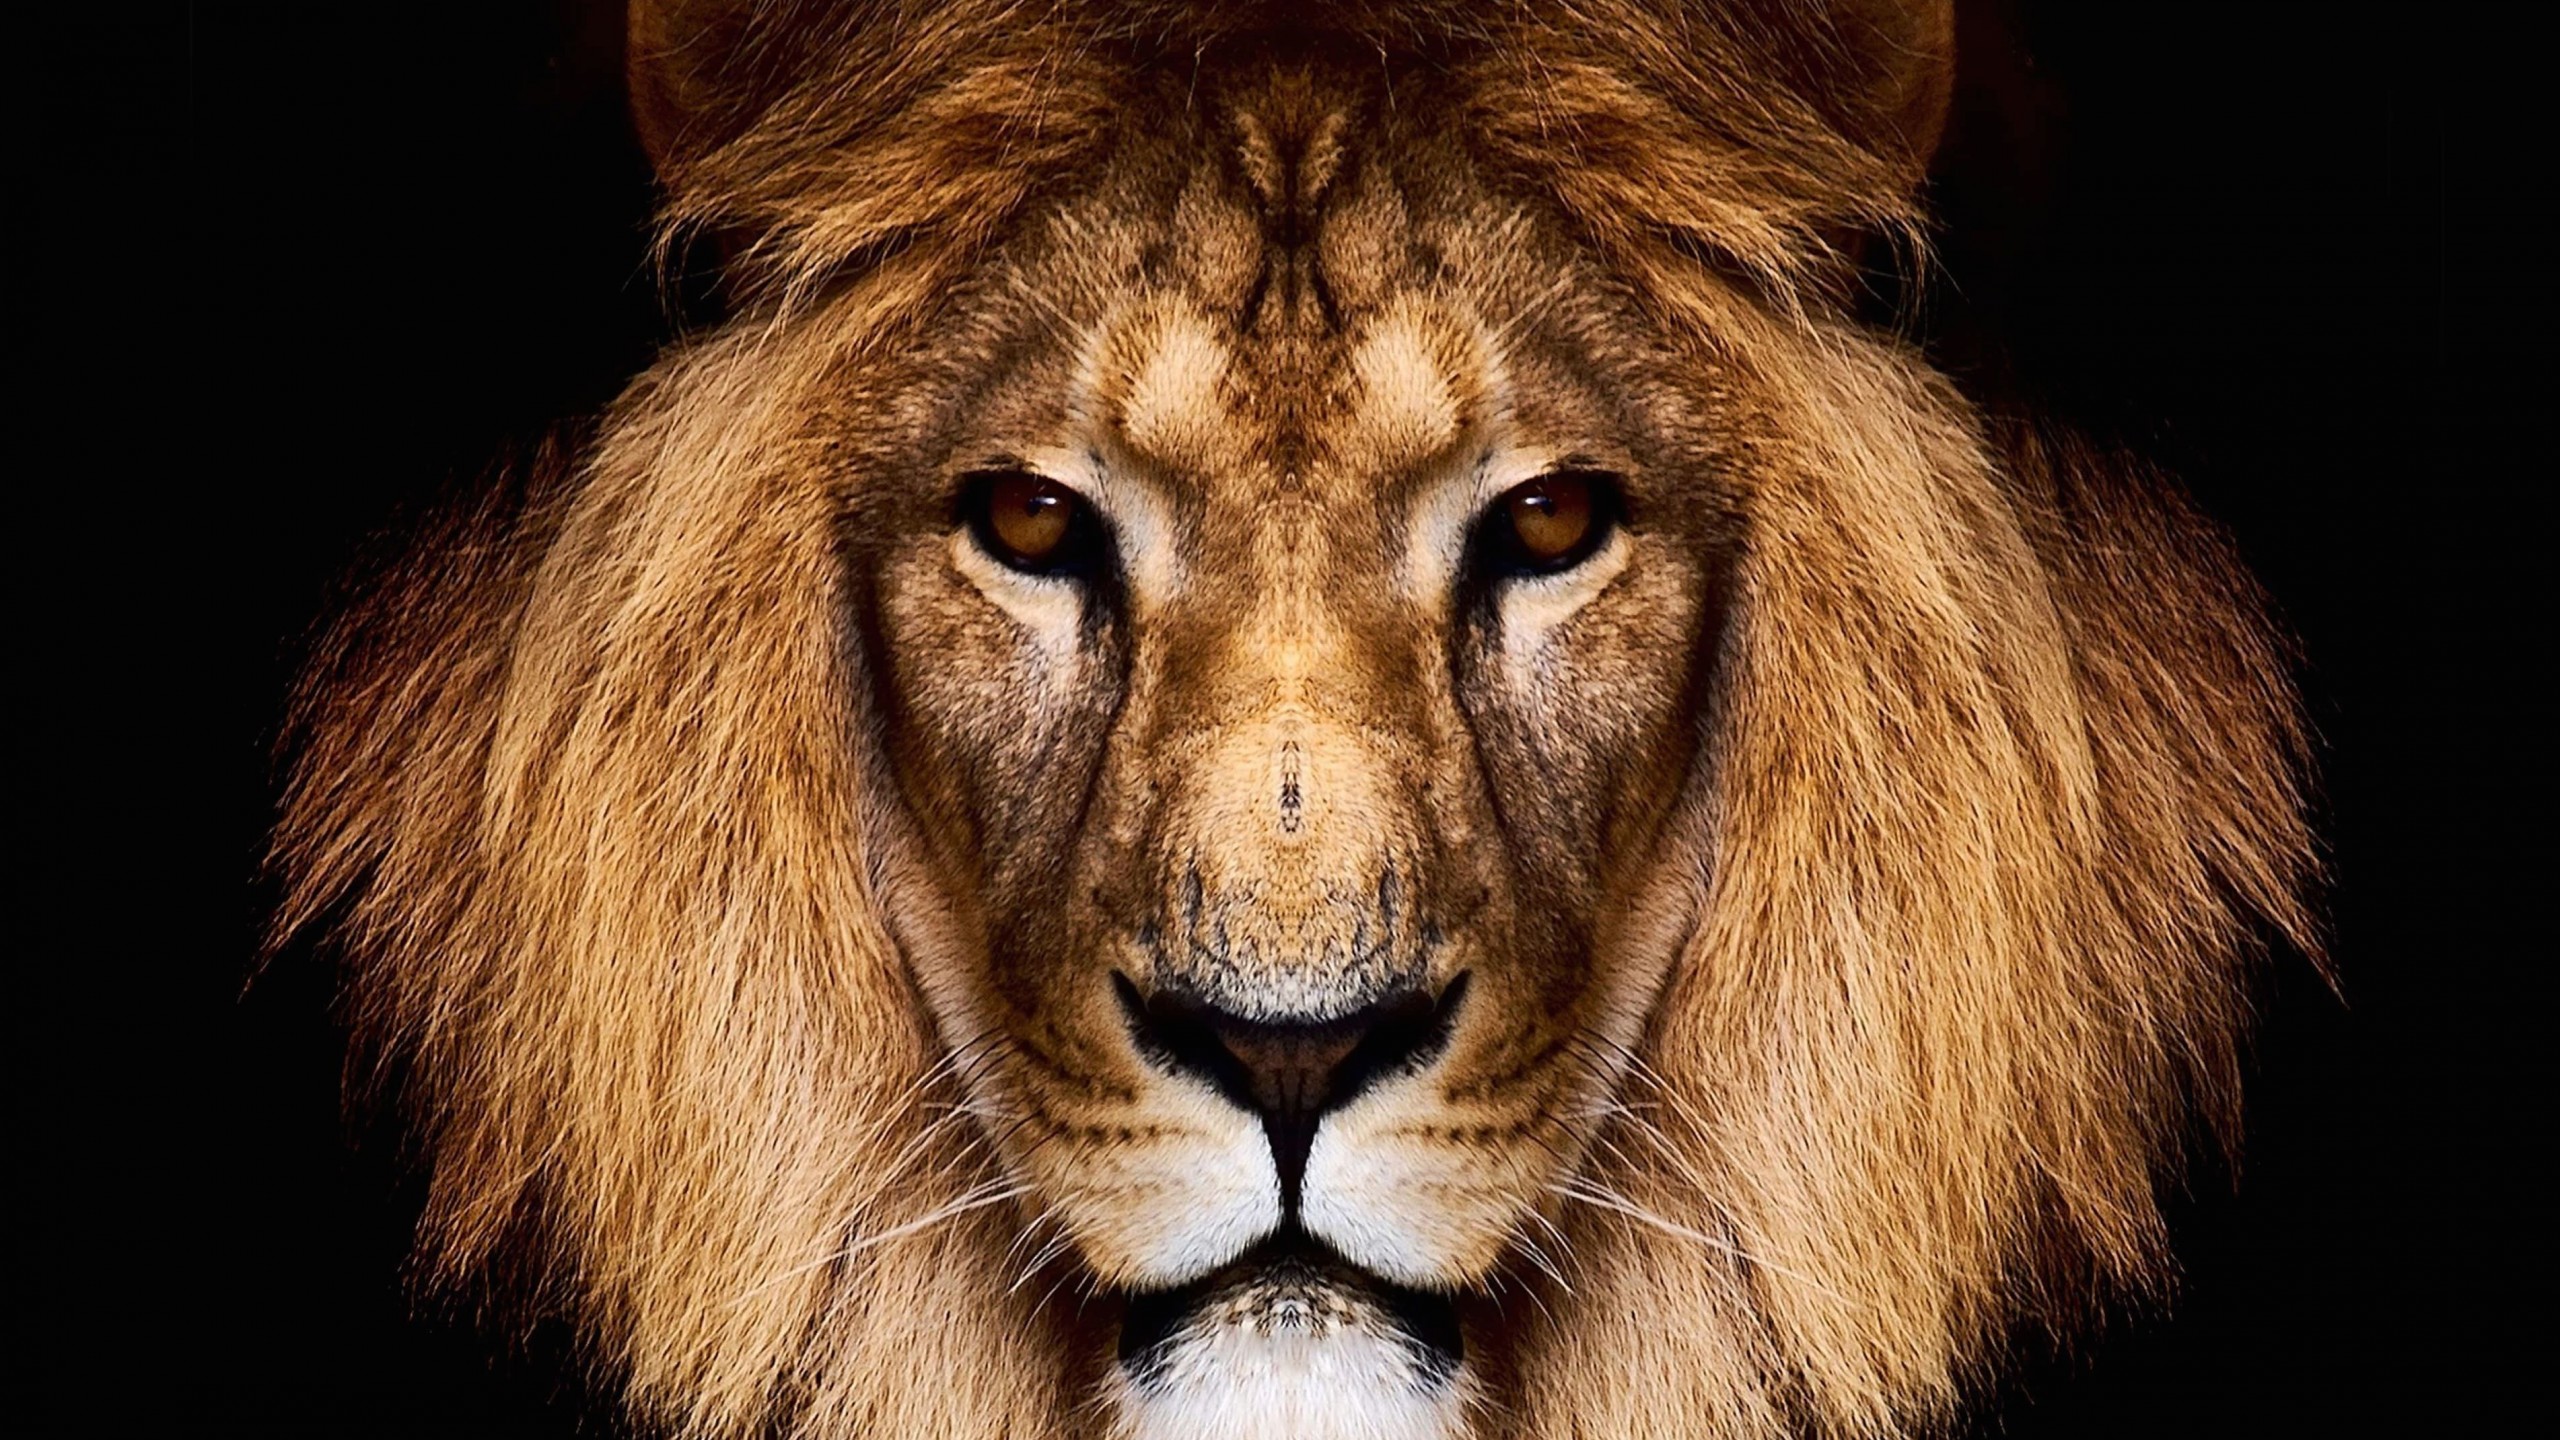 King Lion Wallpaper for Social Media YouTube Channel Art